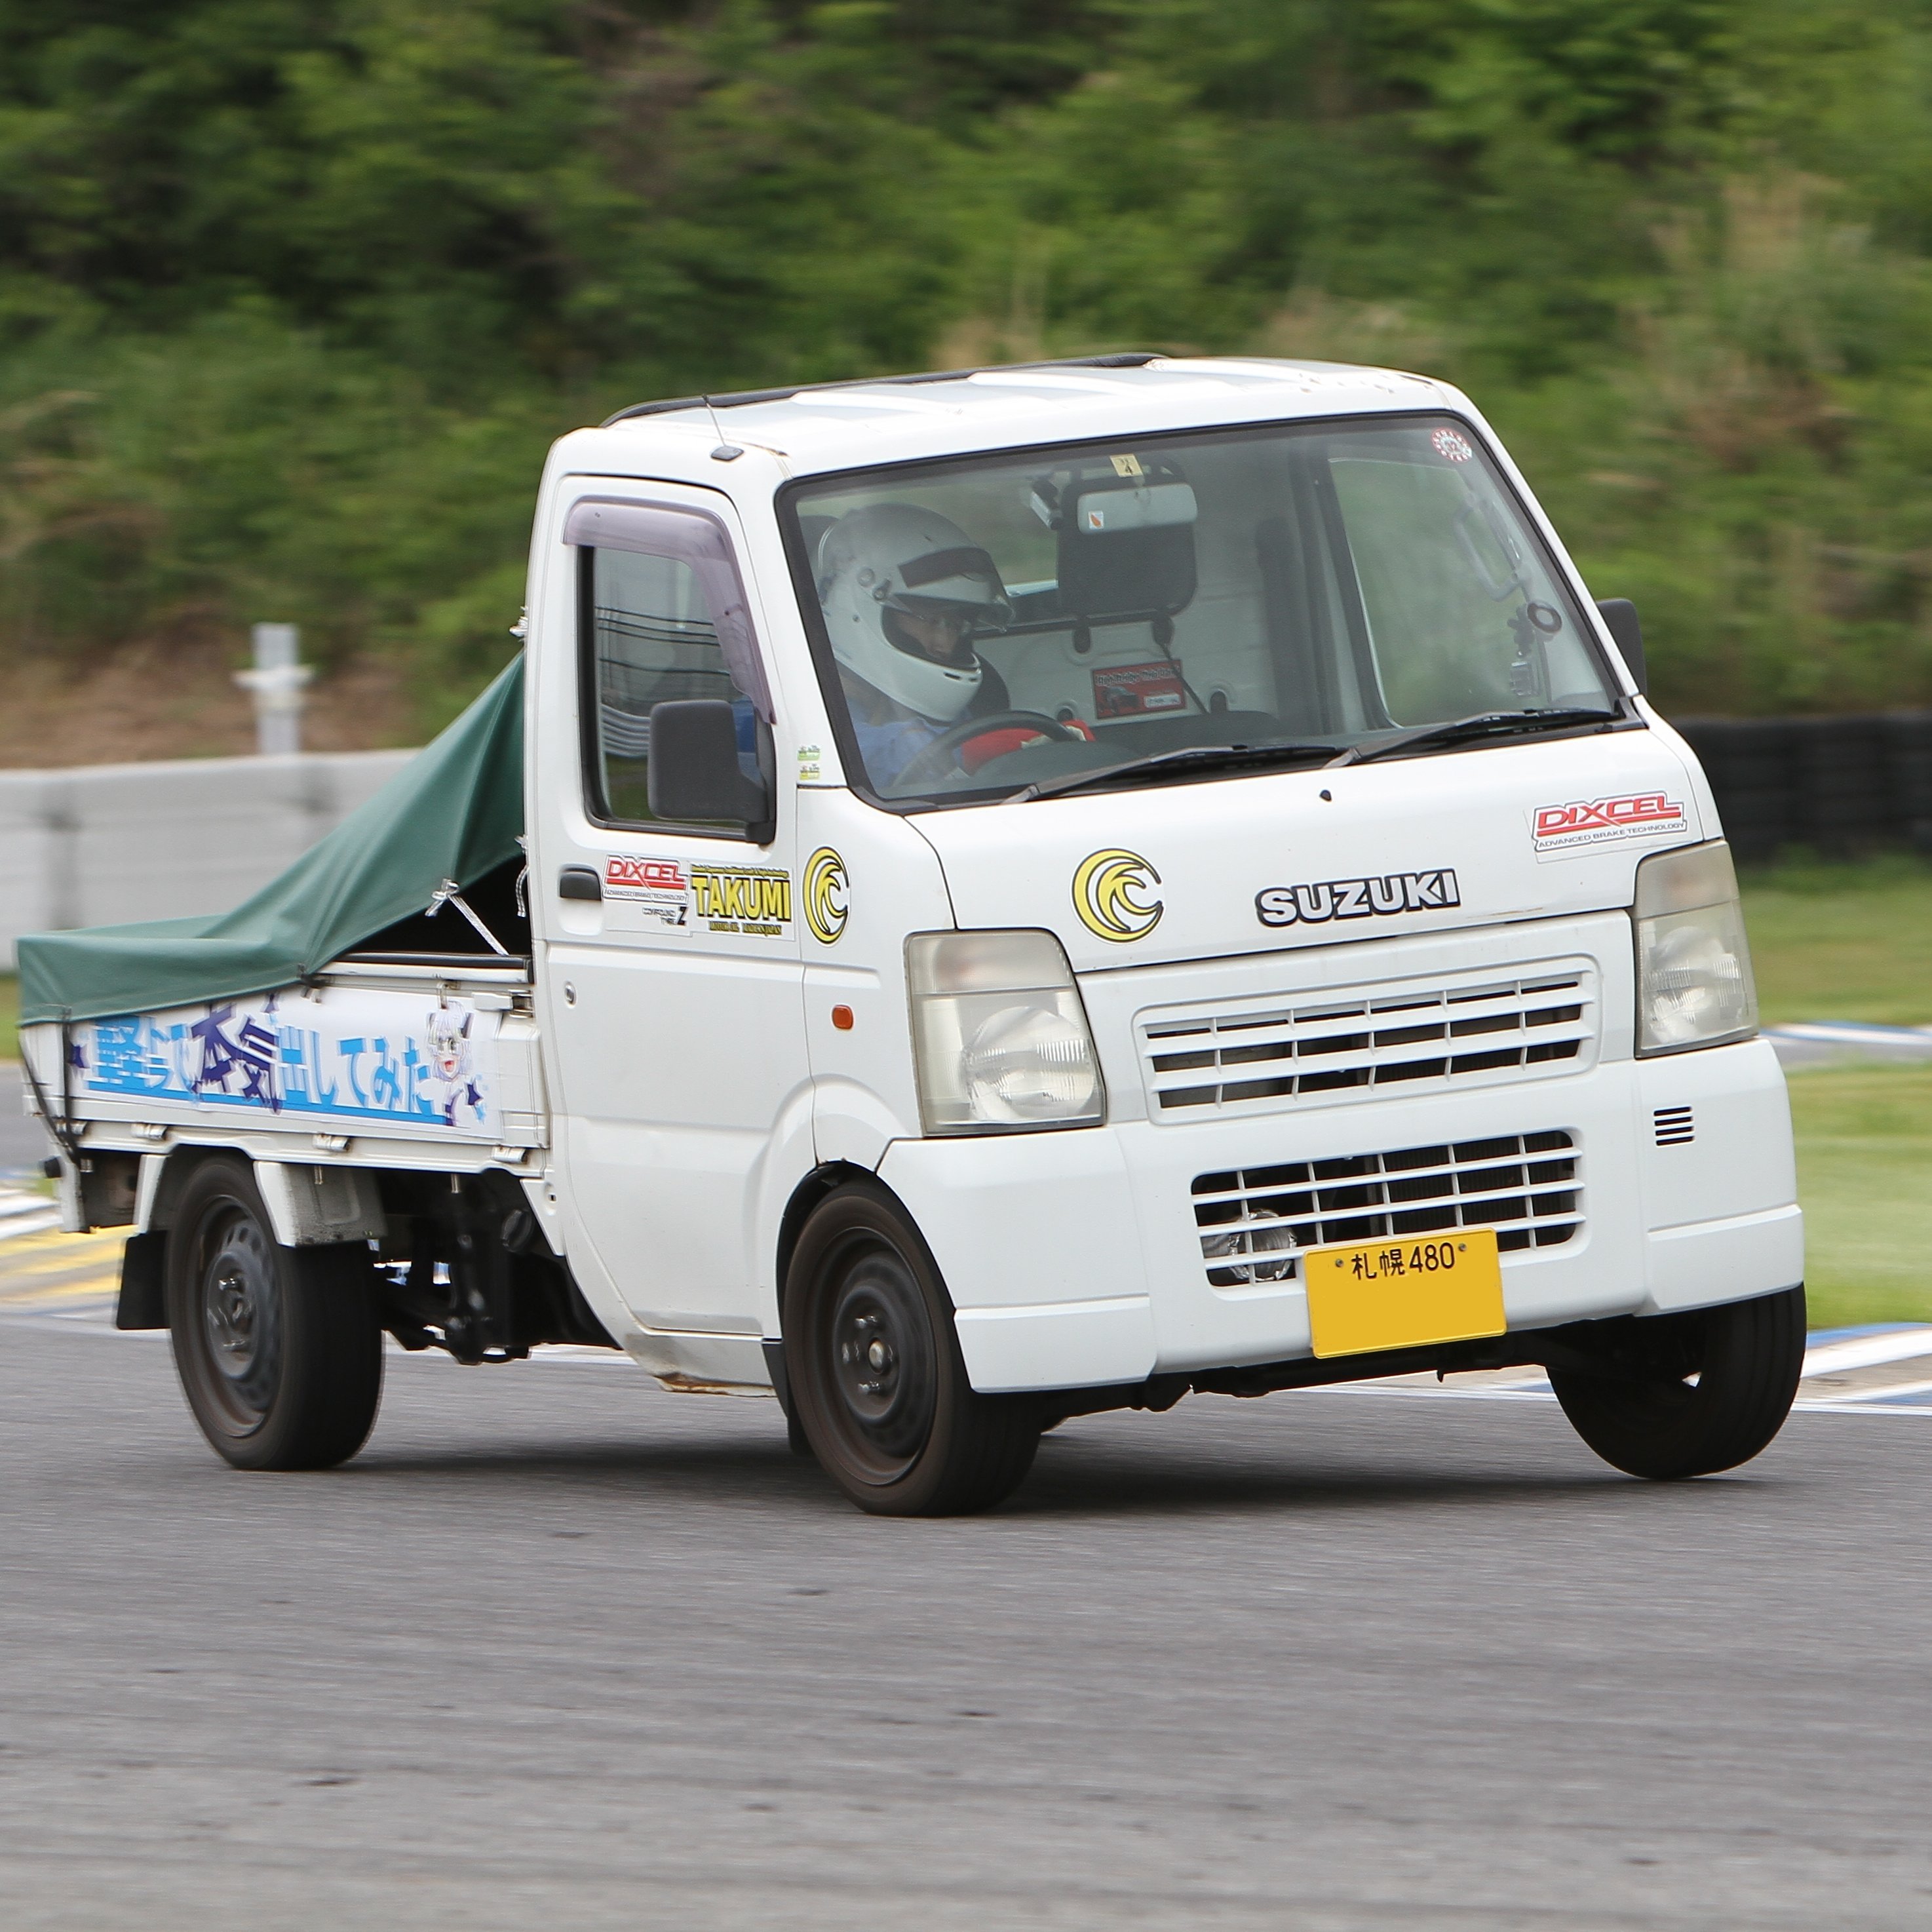 Driver 小野圭一
2023全日本ジムカーナシリーズ2位獲得
DUNLOP_CUSCO_WinmaX_軽市_ロードスター
軽トラ上がりで誰よりも速く